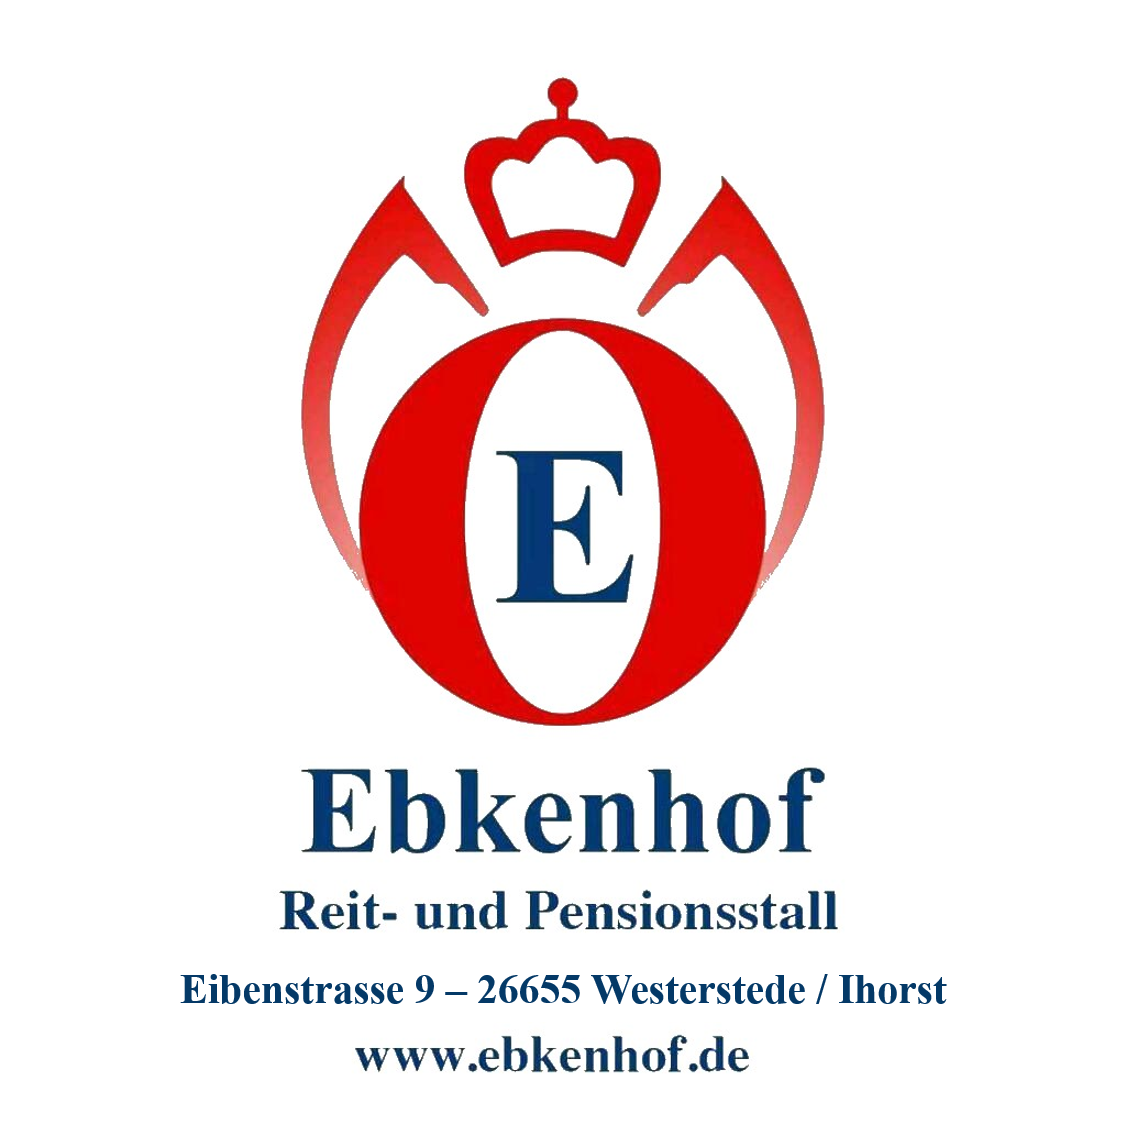 Ebkenhof Reit- und Pensionsstall